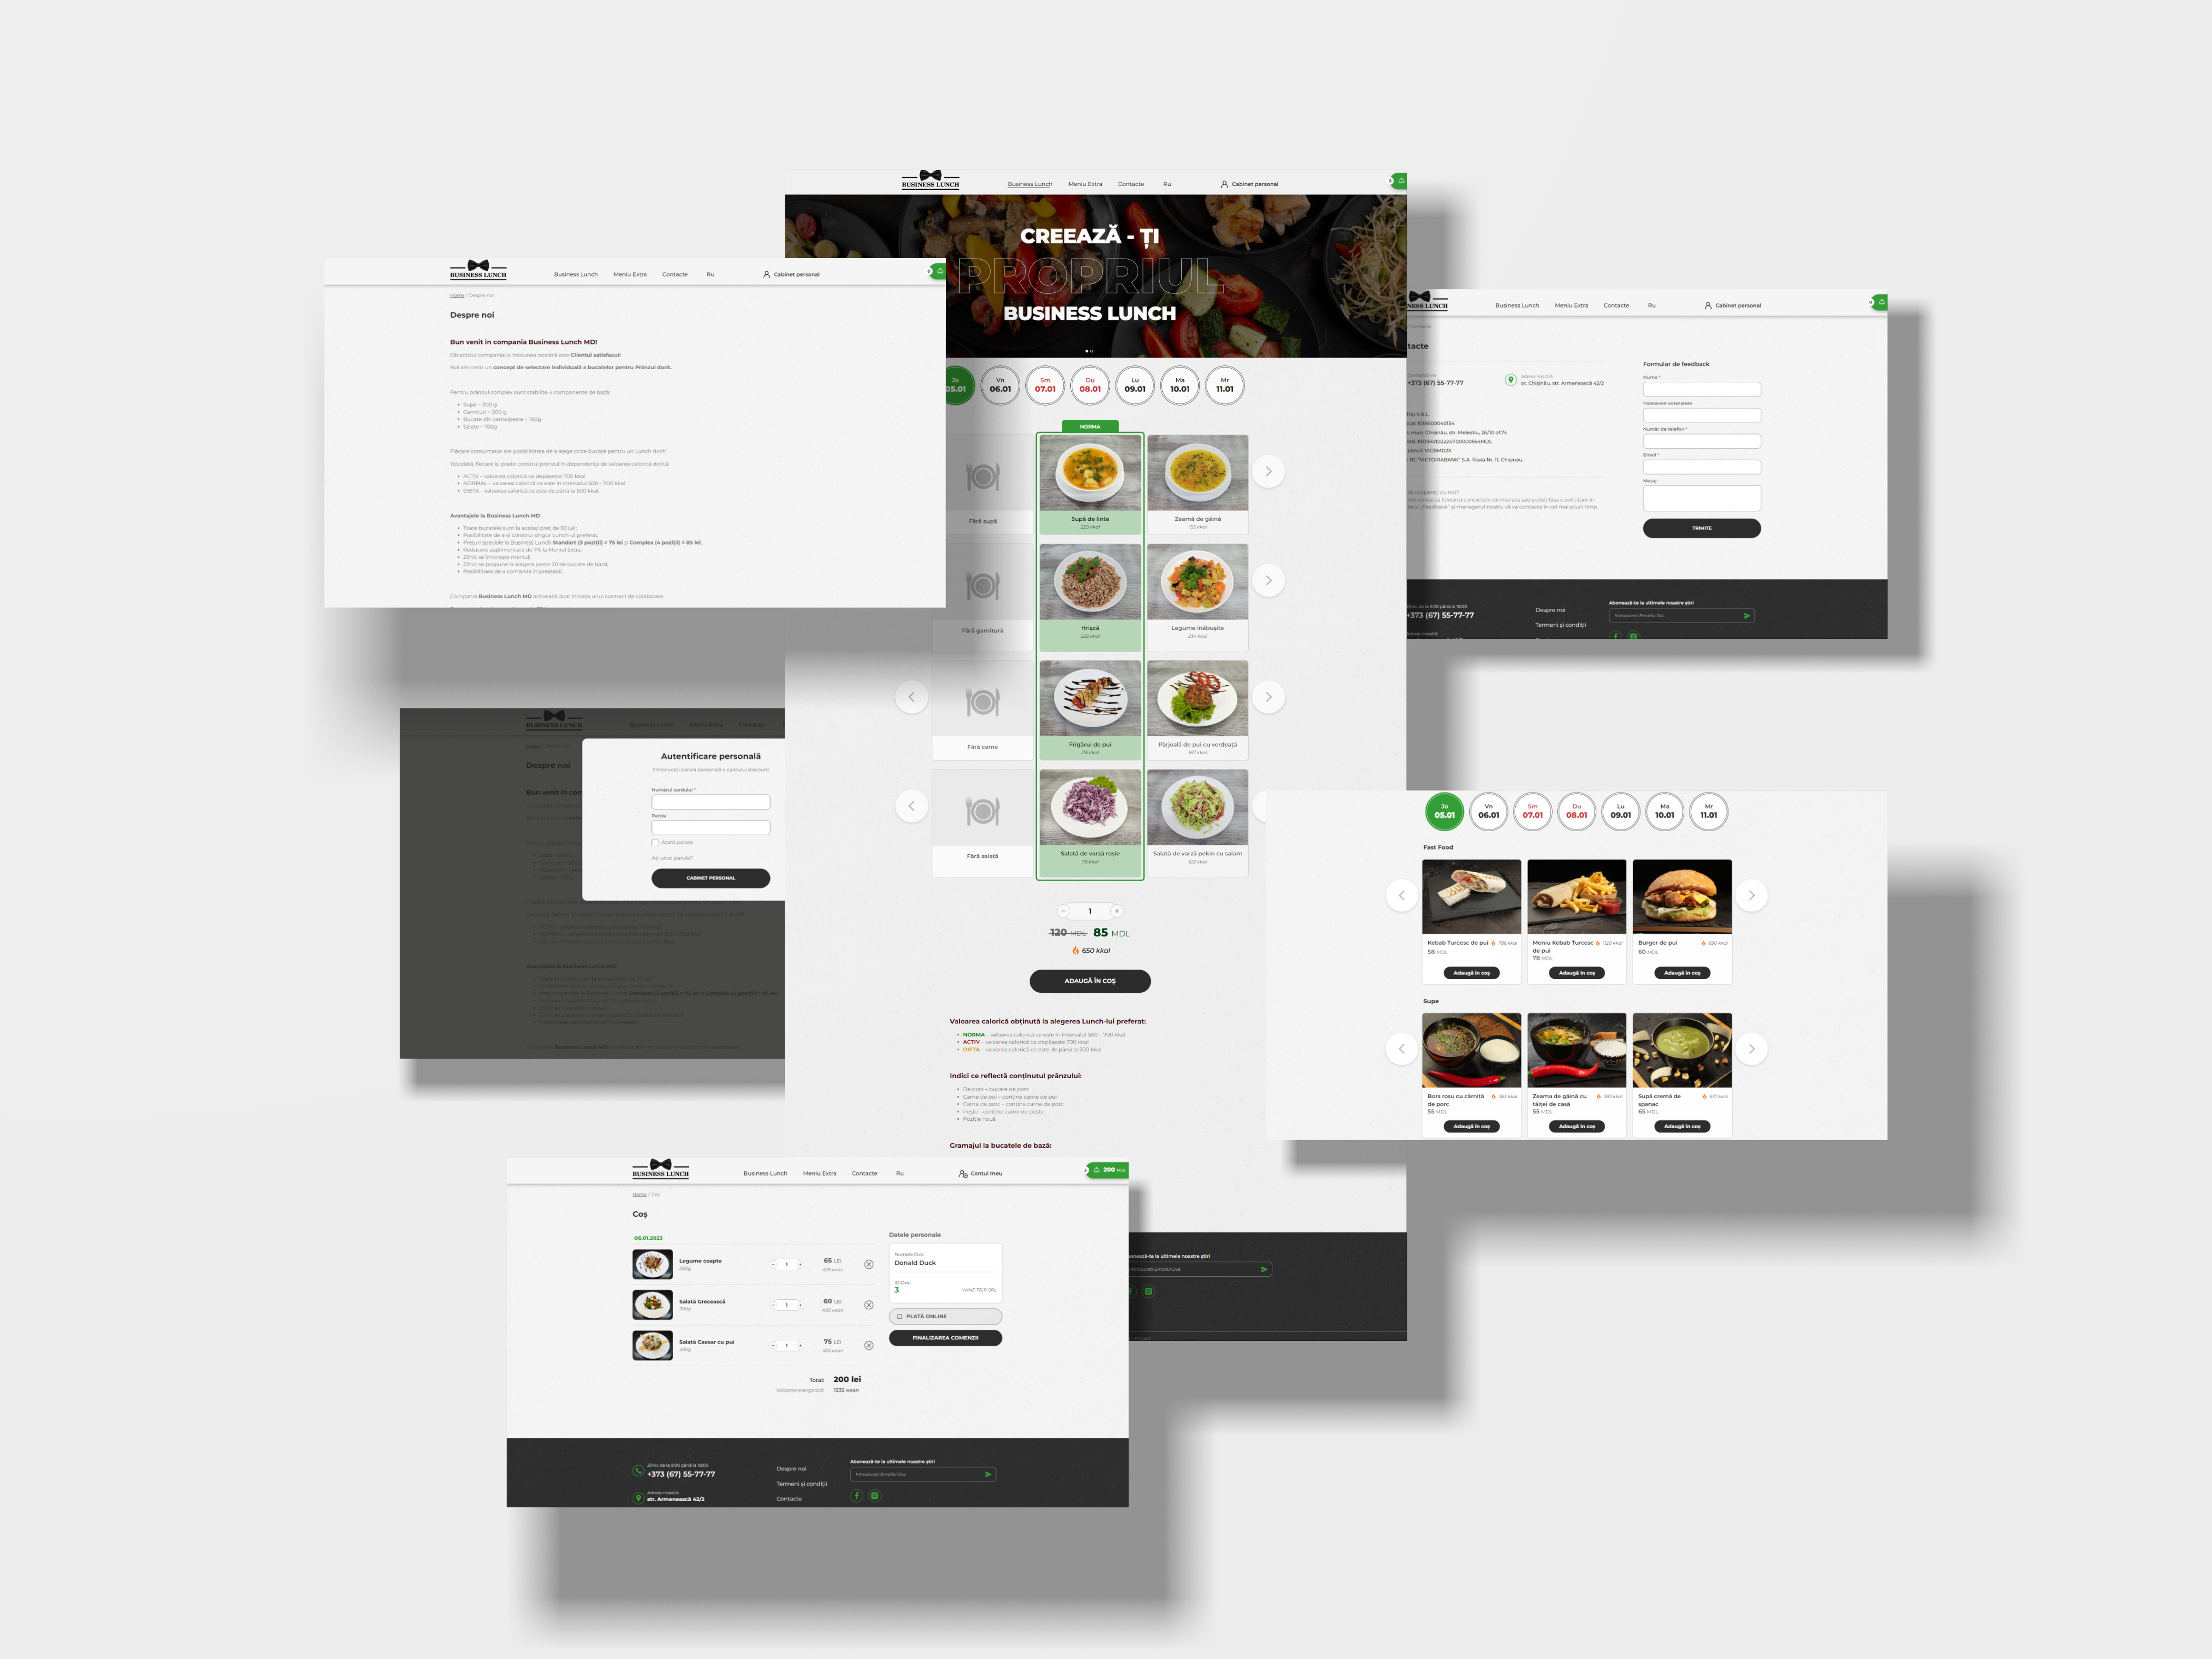 Creare website pentru comandarea prânzului în oficiu businesslunch.md